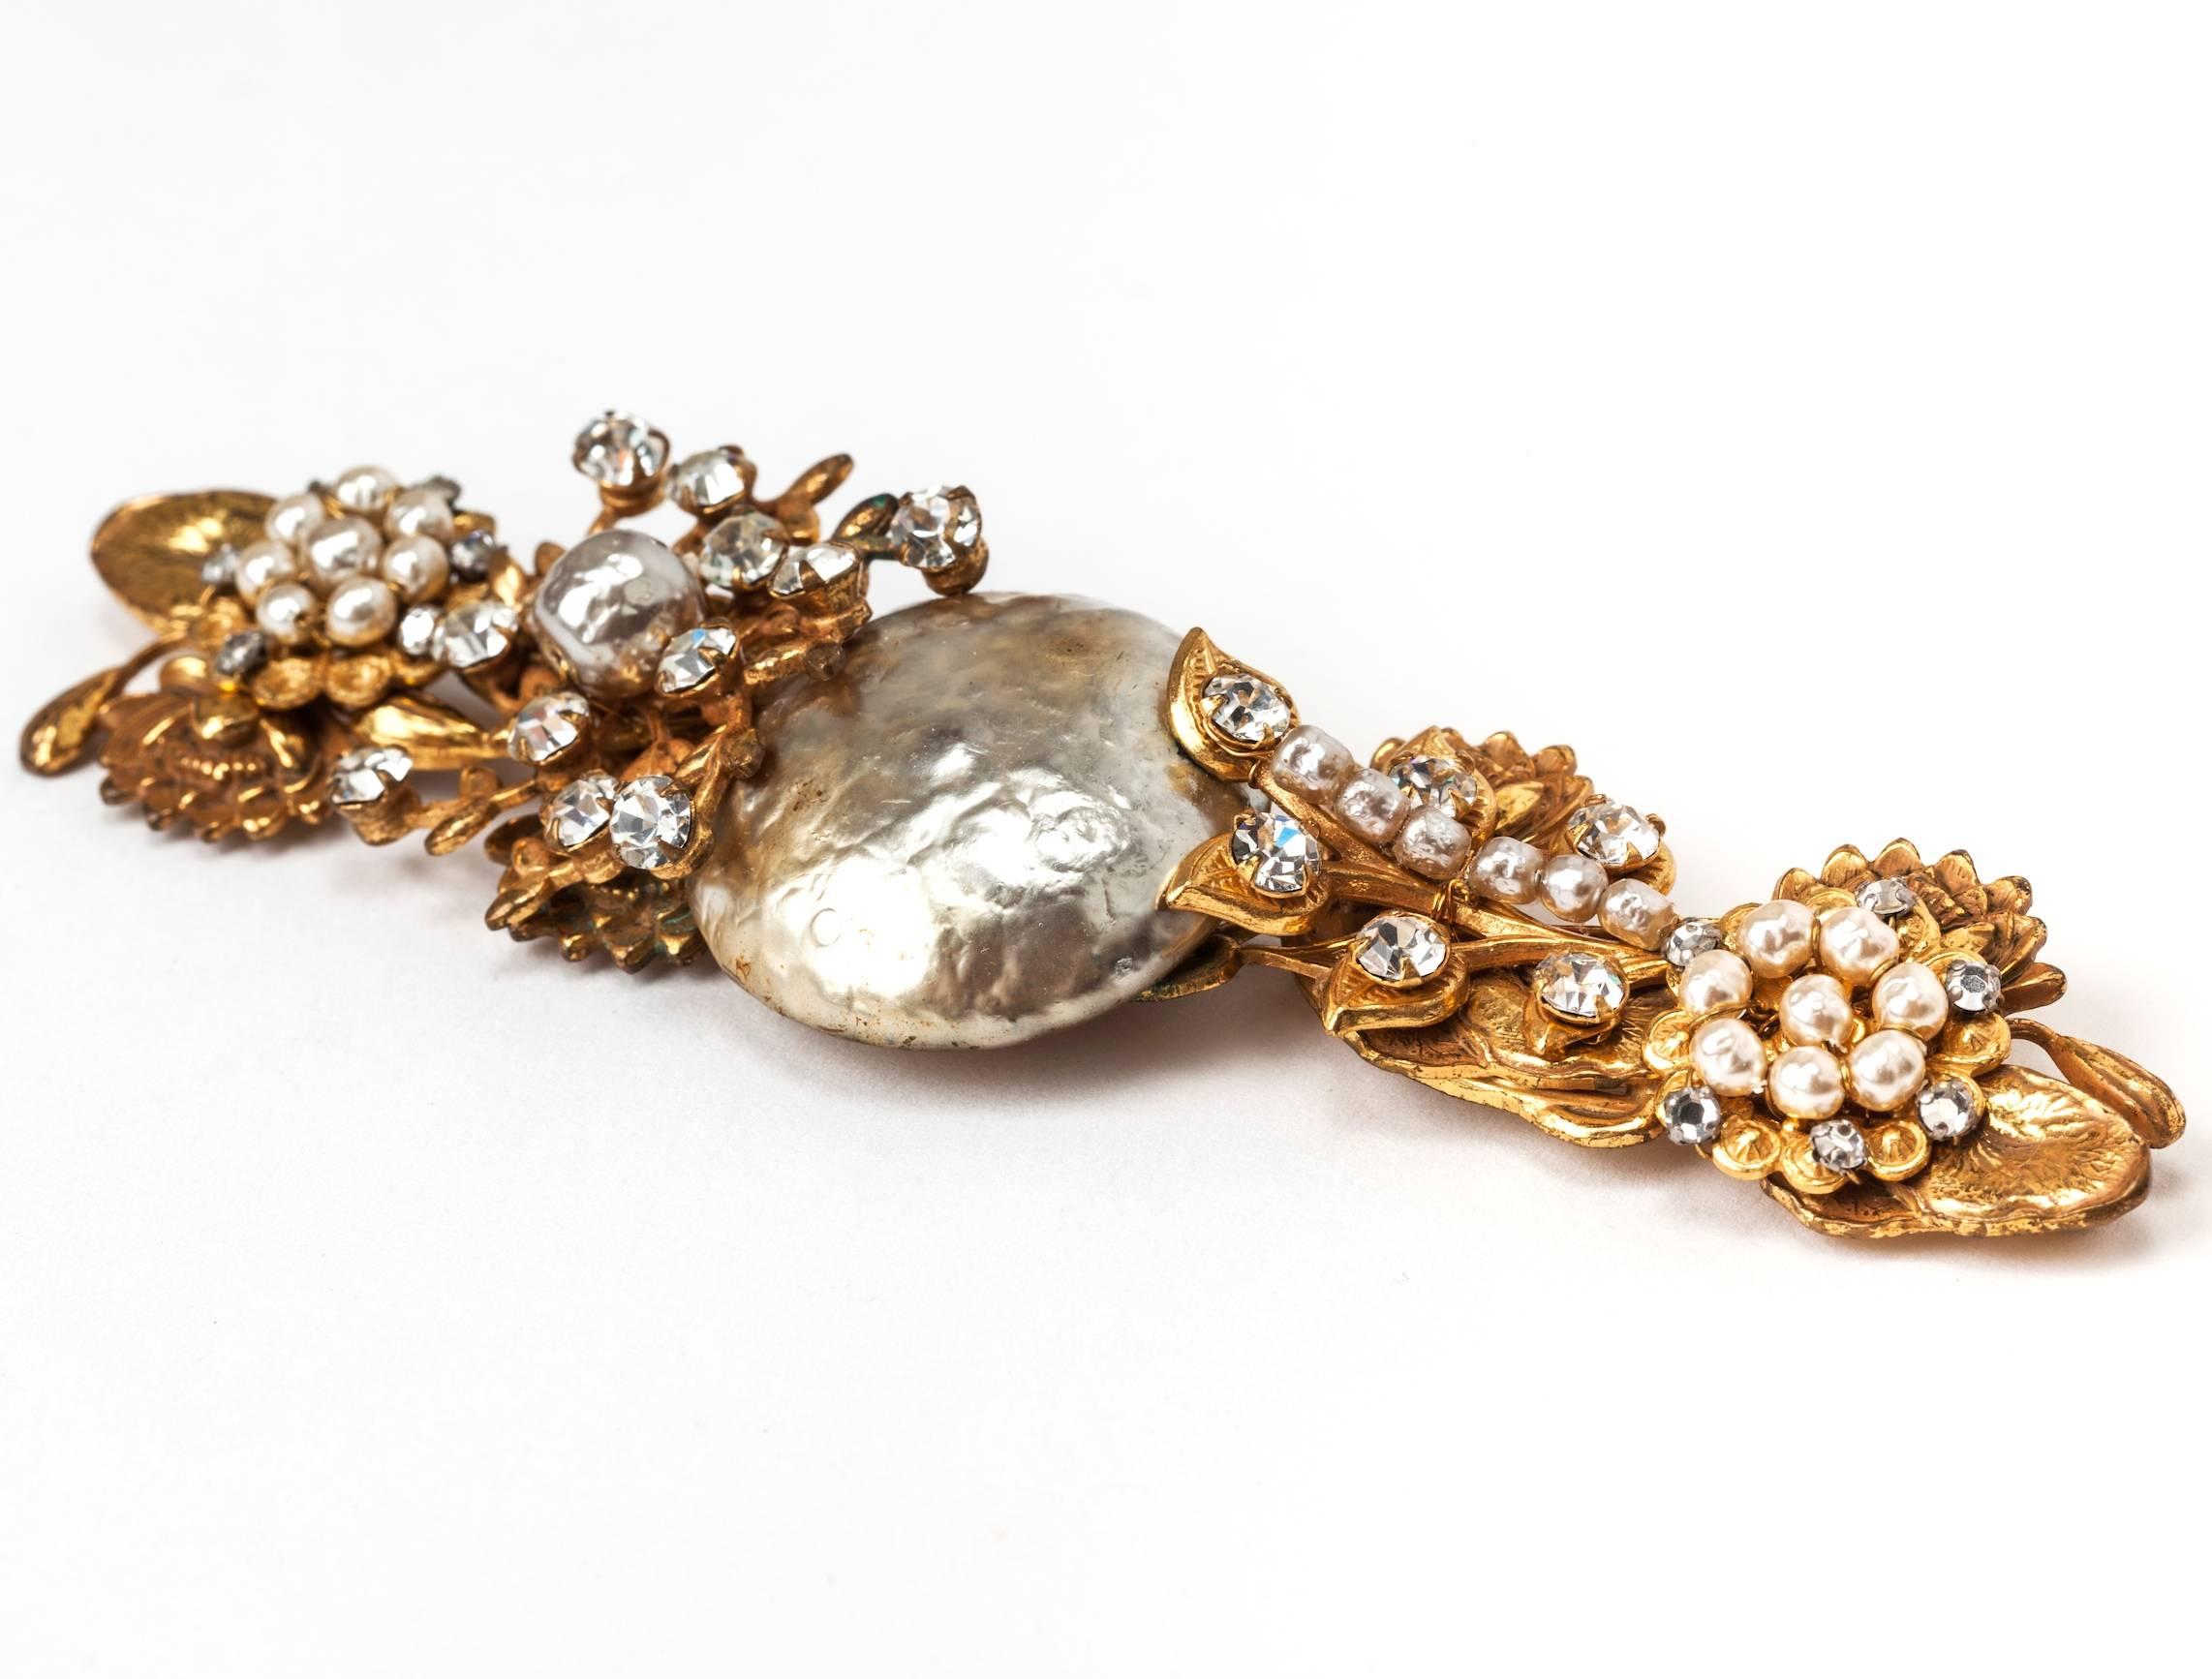 Magnifique broche Miriam Haskell en fausse perle surdimensionnée, sertie de métal doré russe, avec des grappes de perles brodées et des strass dans des nénuphars. états-Unis des années 1940. 5